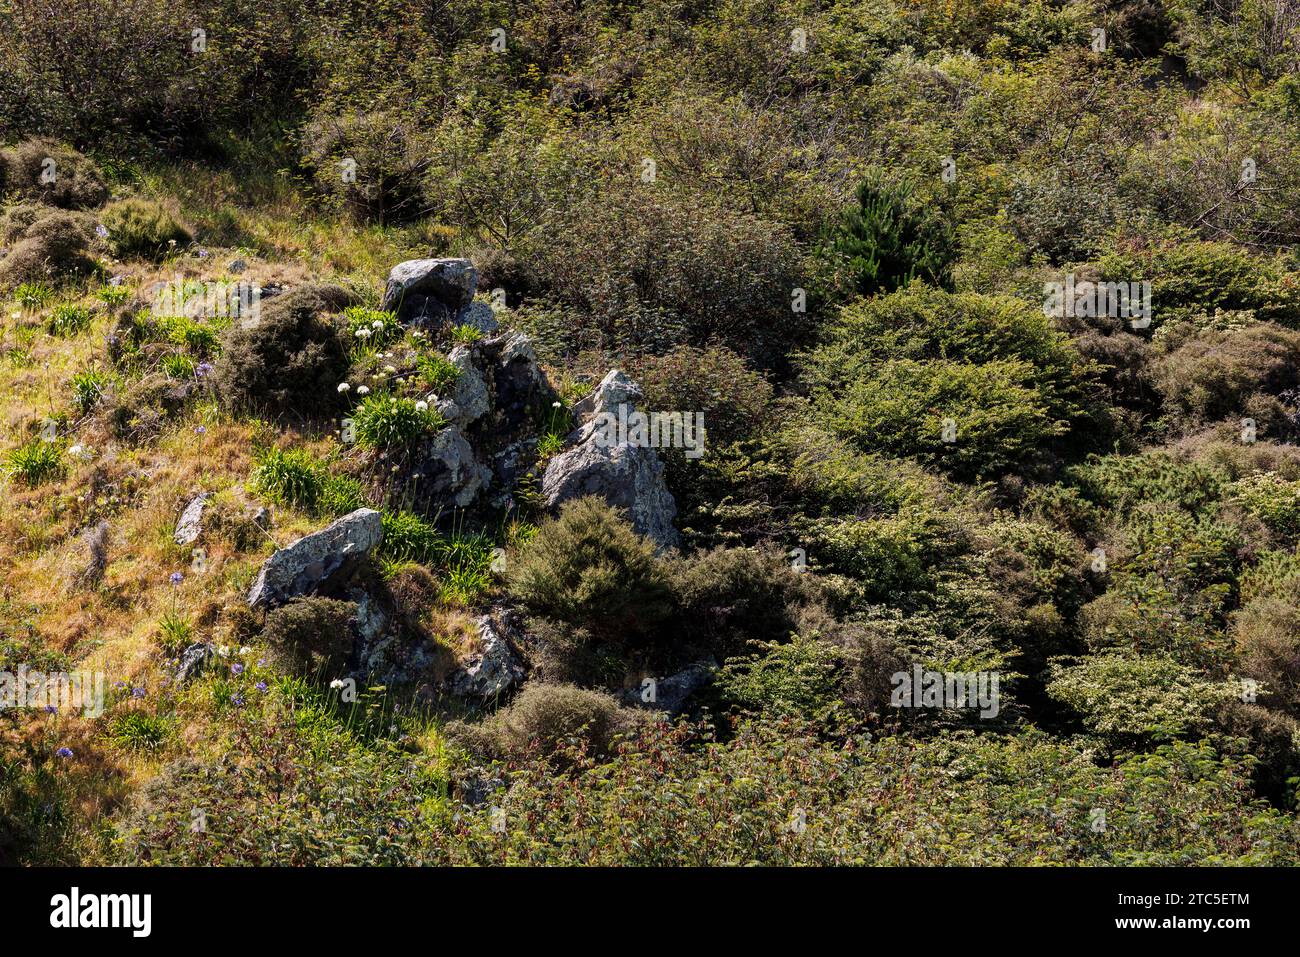 Ein Bild, das in Paekakariki, Neuseeland, einer kleinen Küstenstadt außerhalb von Wellington, aufgenommen wurde. Das Bild zeigt einen Hügel, der mit grüner Pflanze bedeckt ist Stockfoto